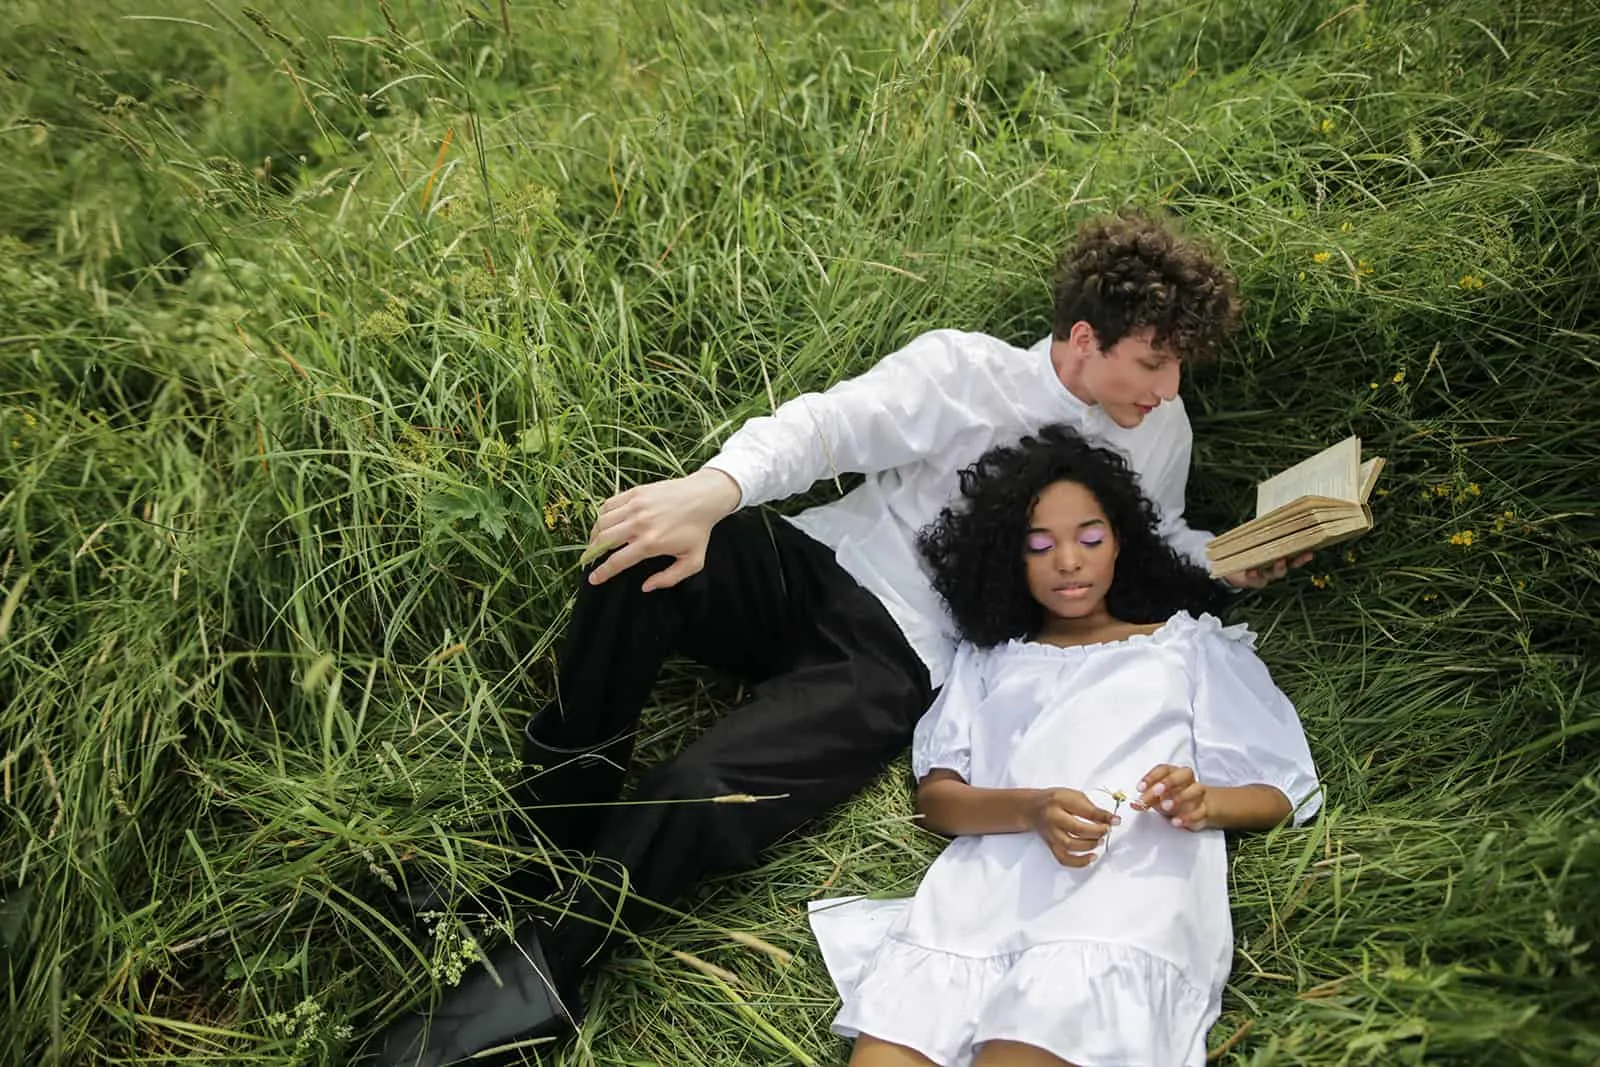 Ein Mann liest einer Frau ein Liebesgedicht vor, während er zusammen in einem grünen Gras liegt